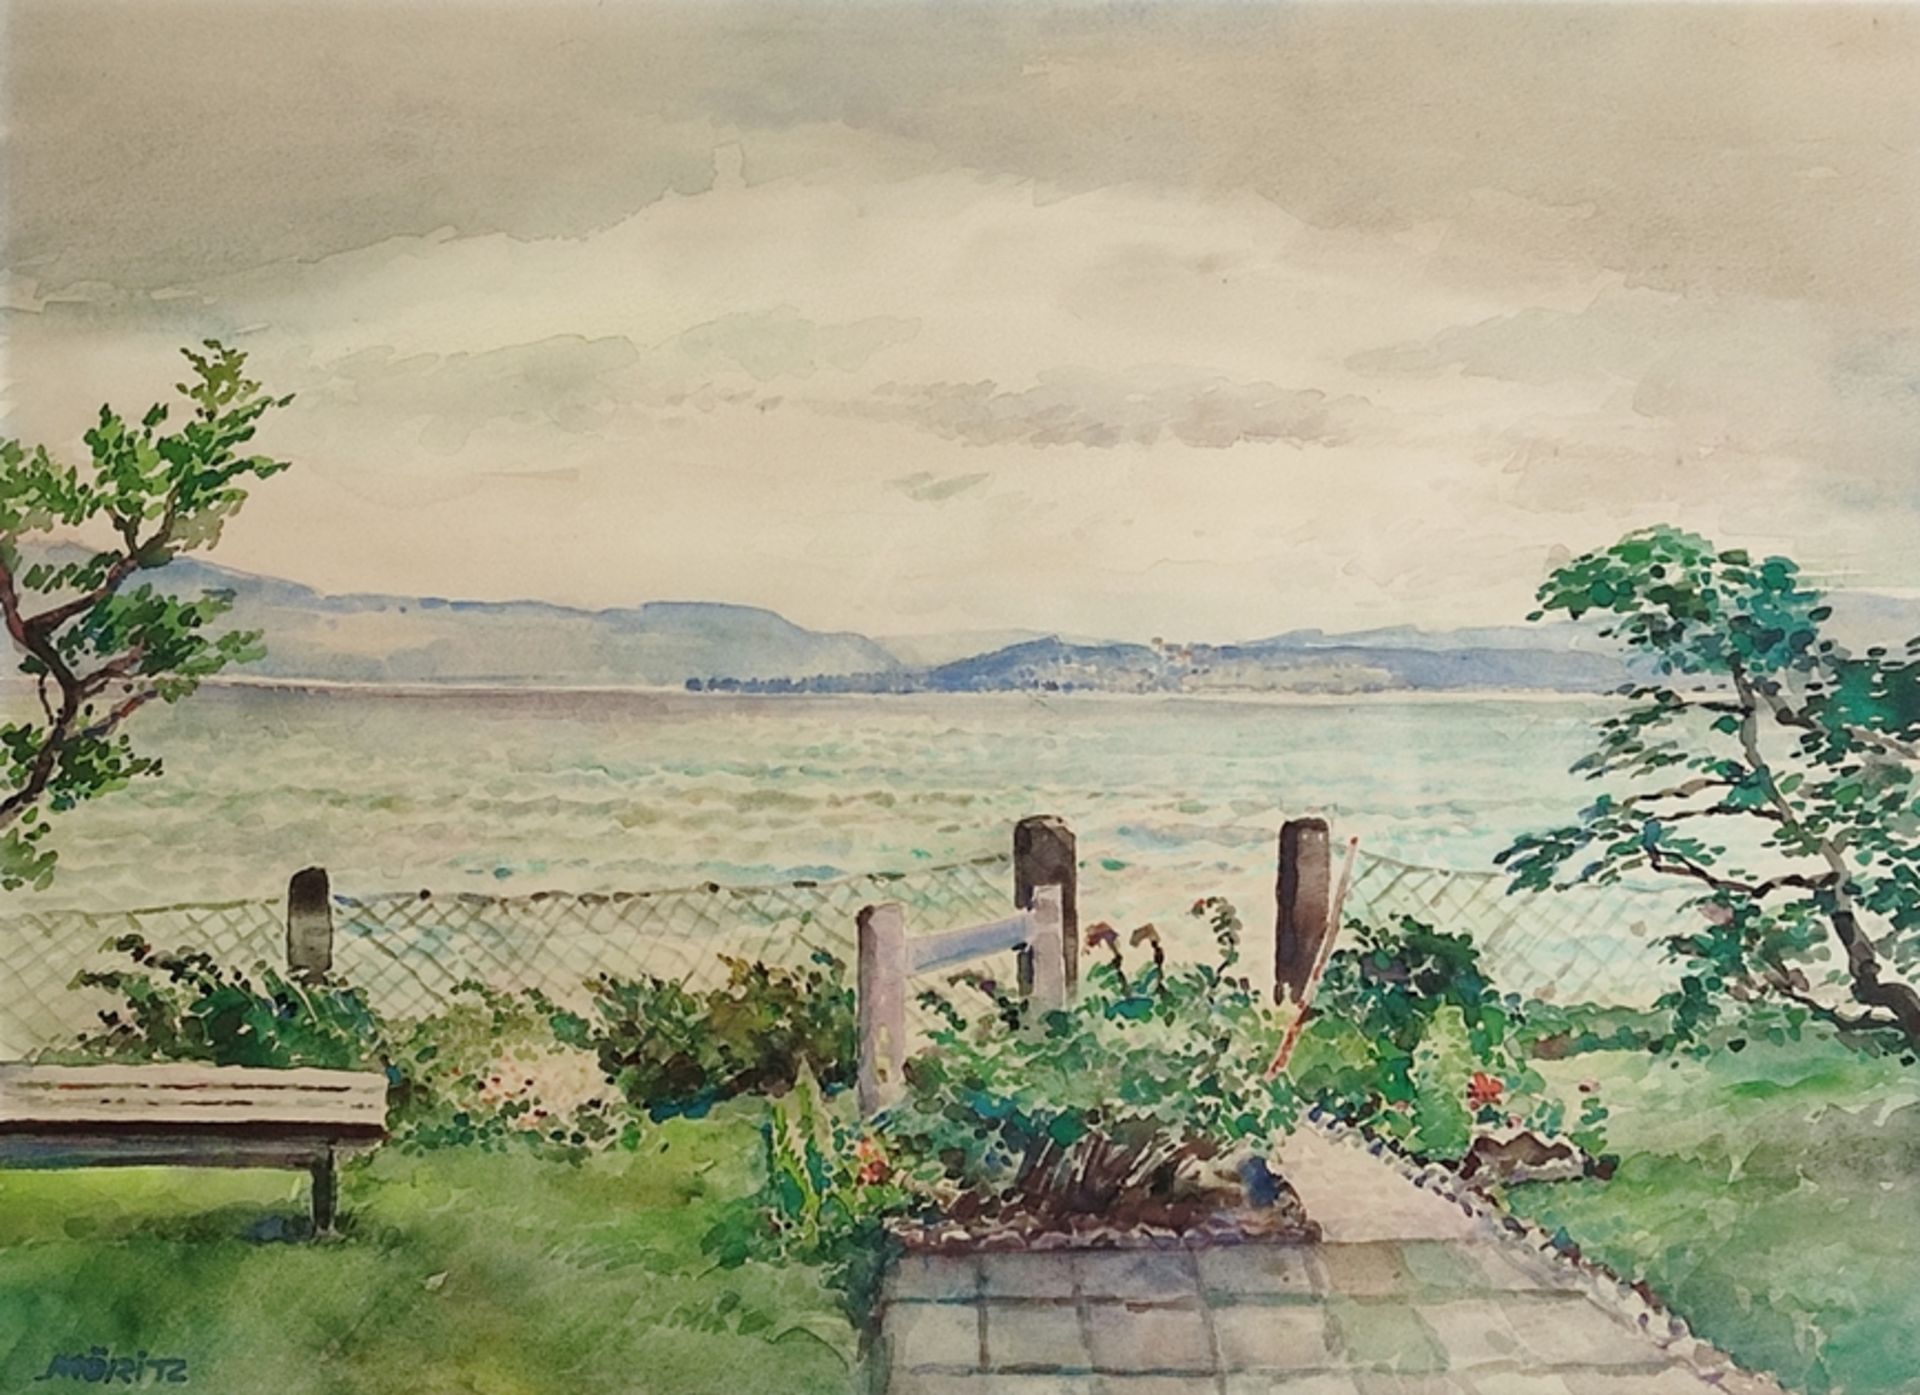 Möritz, Karl (1896 Munich - 1963 Blumenfeld) attributed to "Garten am Seeufer", view over Lake Cons